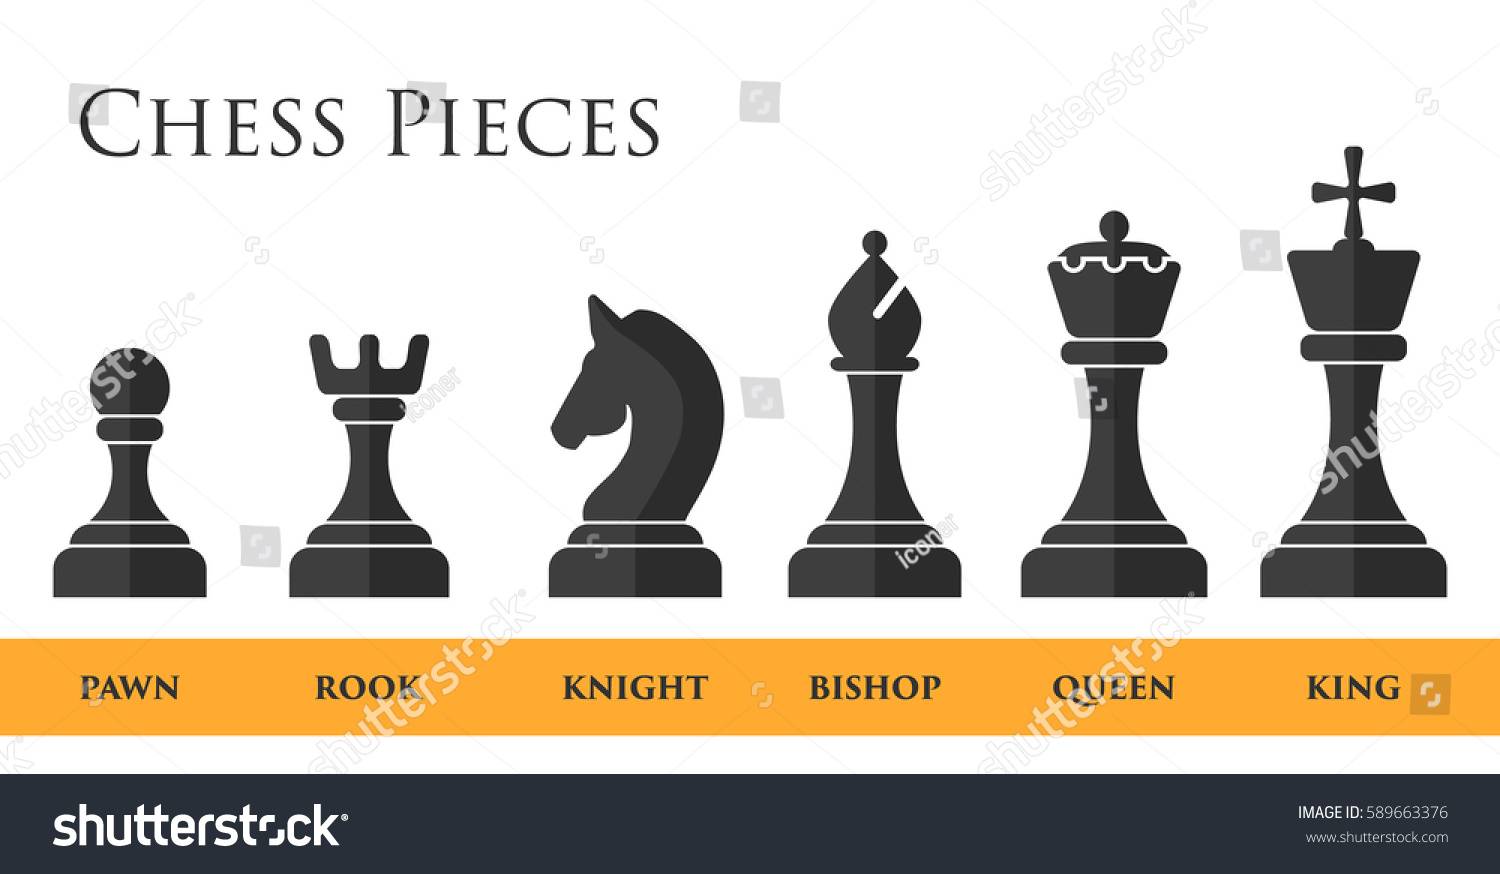 Наименование шахматных фигур на английском